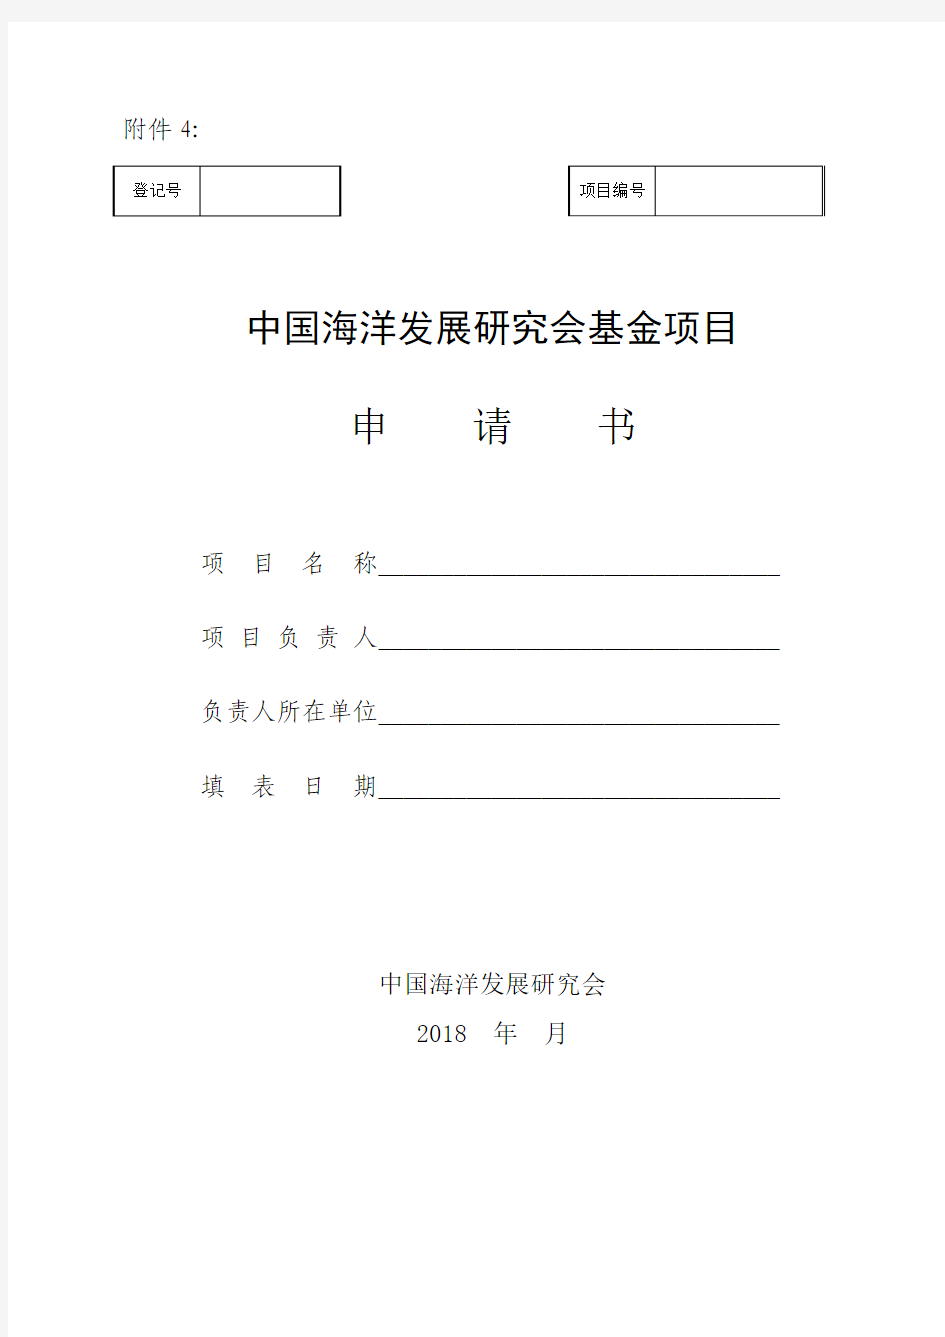 中国海洋发展研究中心项目申请书